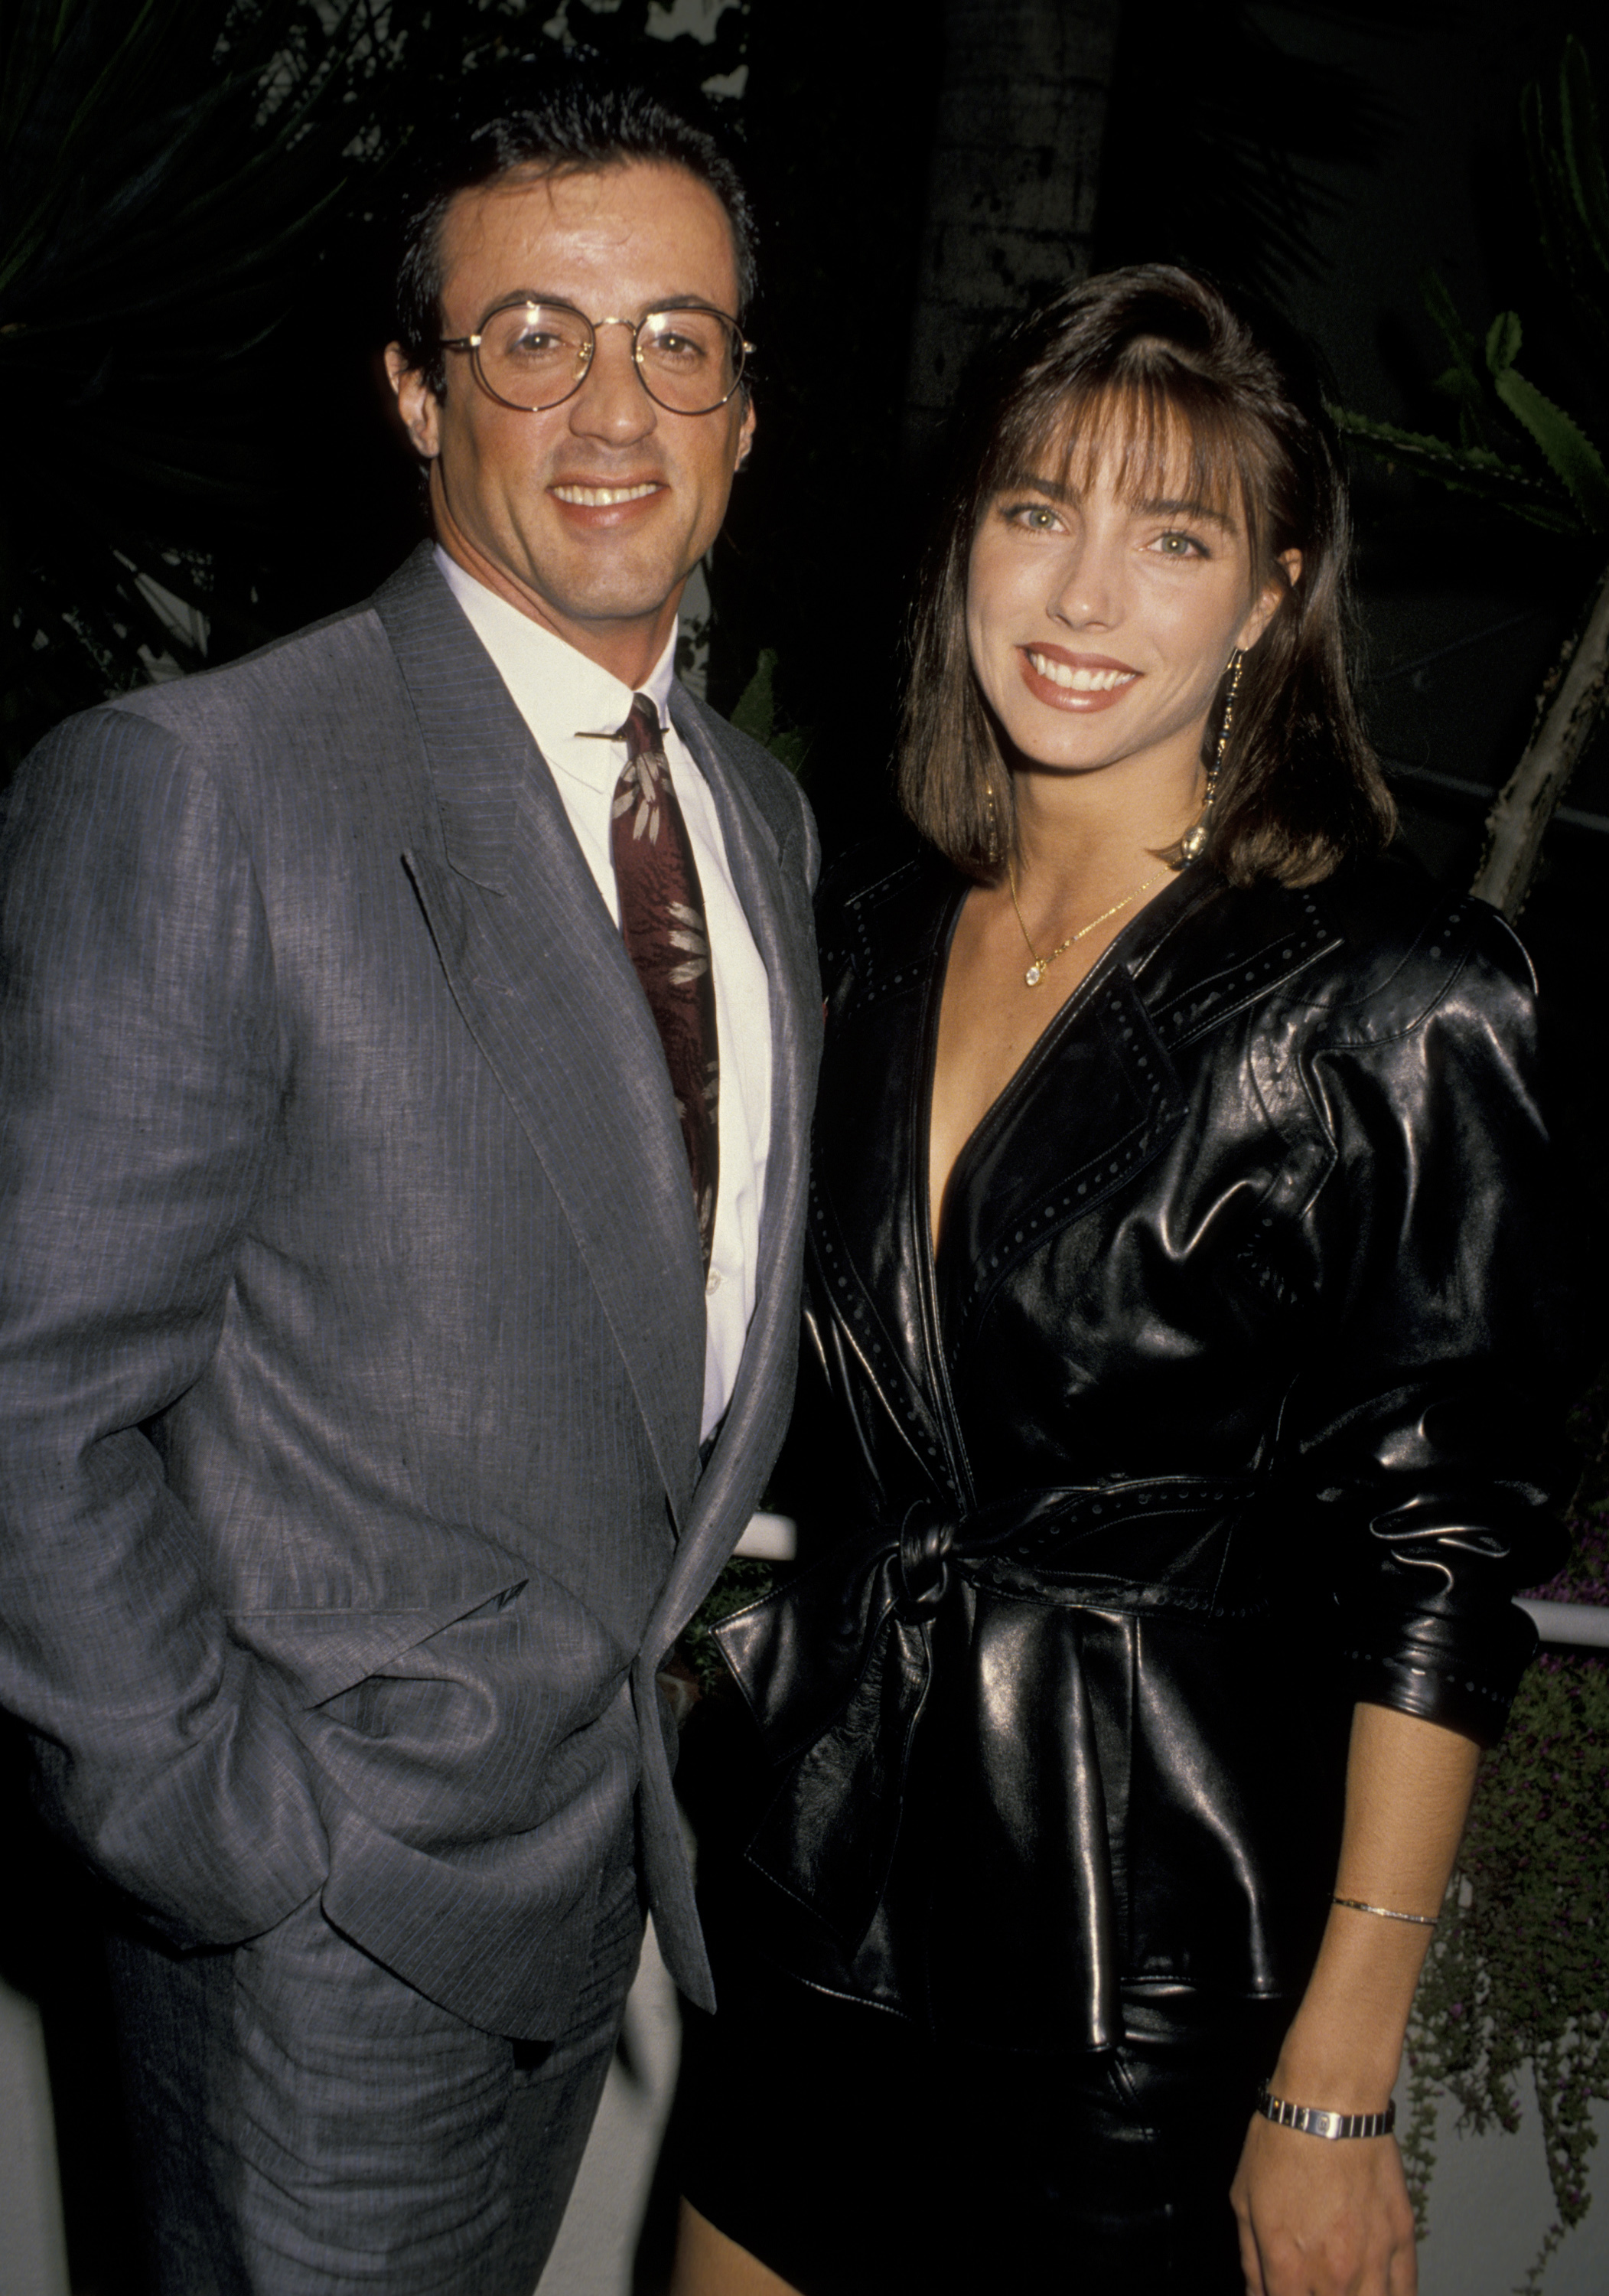 Sylvester Stallone con Jennifer Flavin en 1990 en el restaurante Spago's de Hollywood, California | Foto: Getty Images